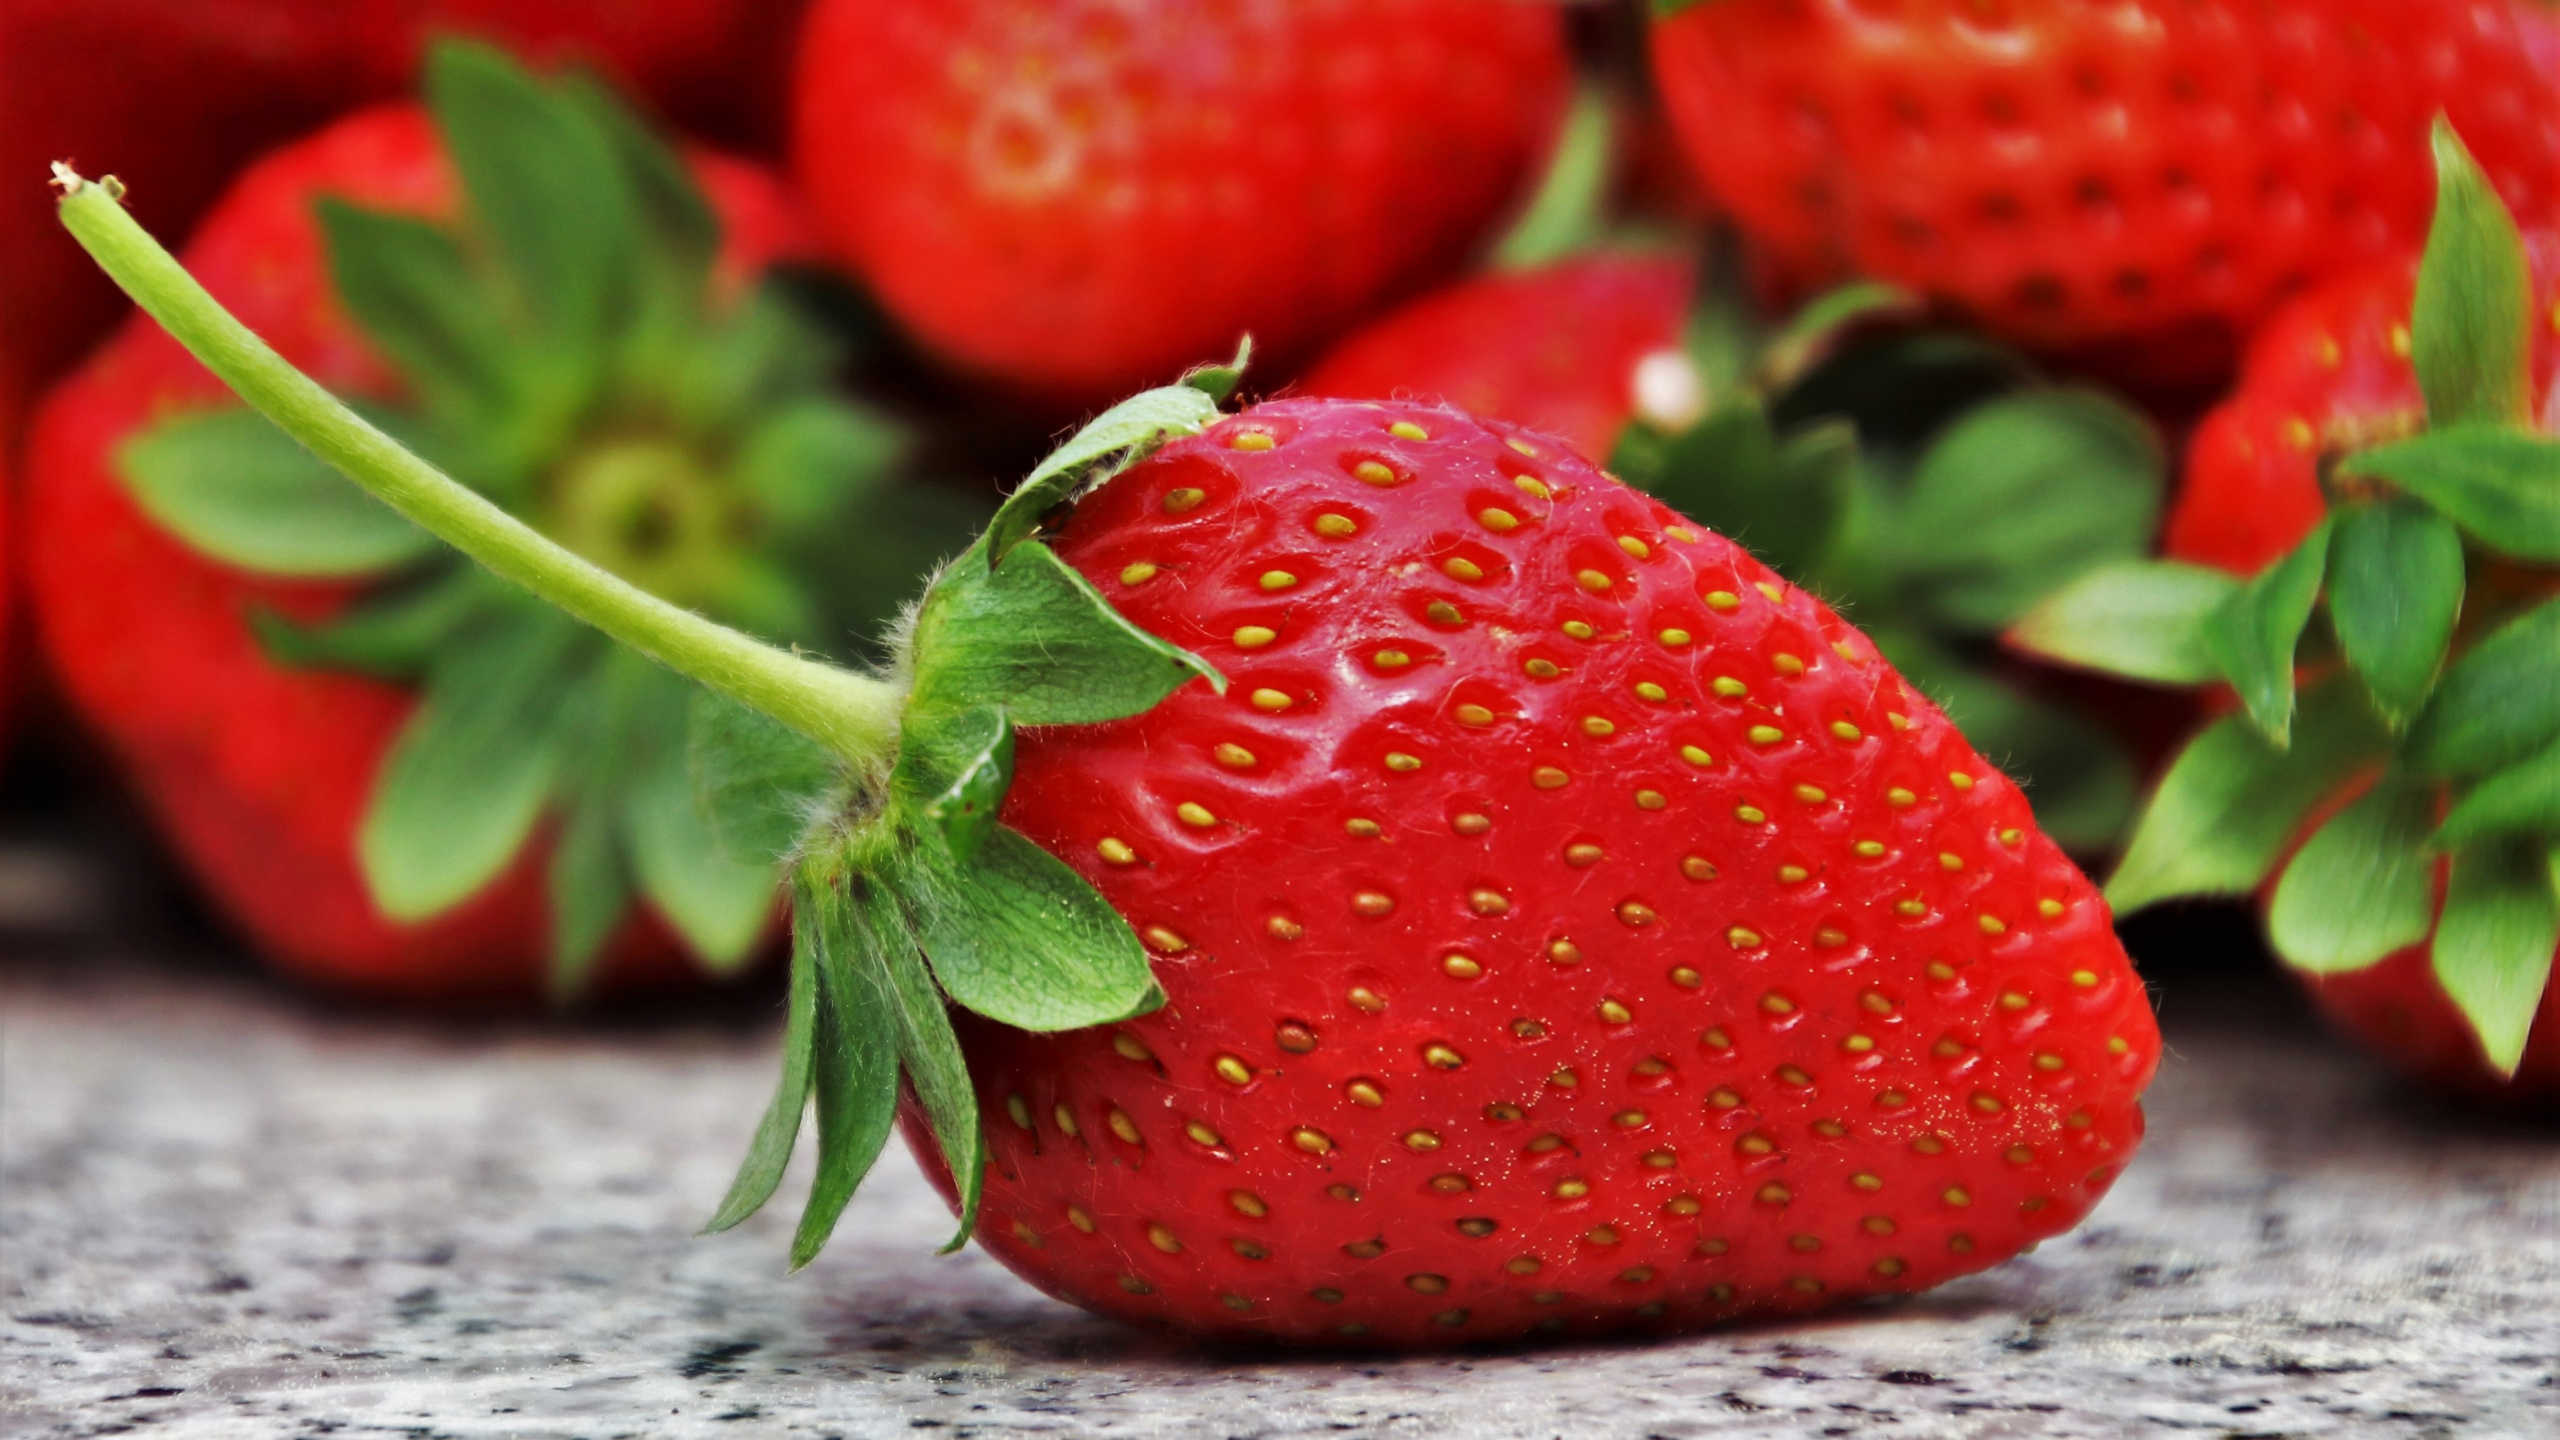 吃, 草莓, 天然的食物, 红色的, 食品 壁纸 2560x1440 允许